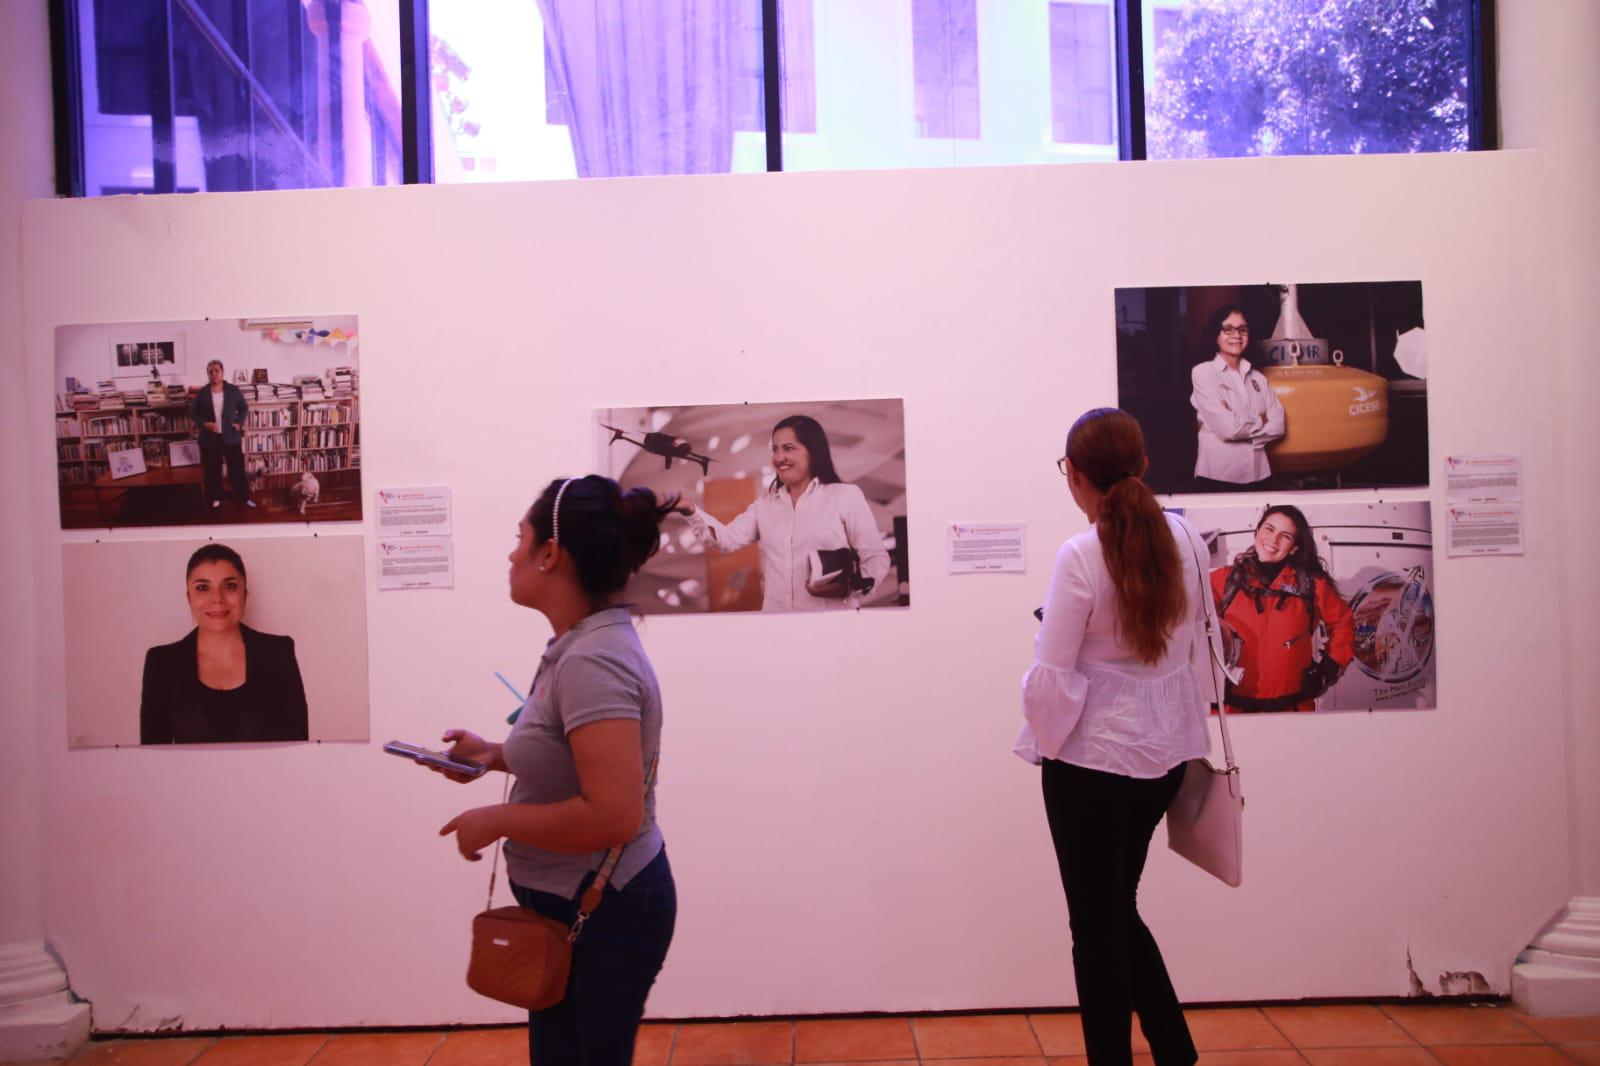 $!La exposición tiene como objetivo visibilizar el trabajo y legado de las mujeres sinaloenses en distintos ámbitos de la sociedad.